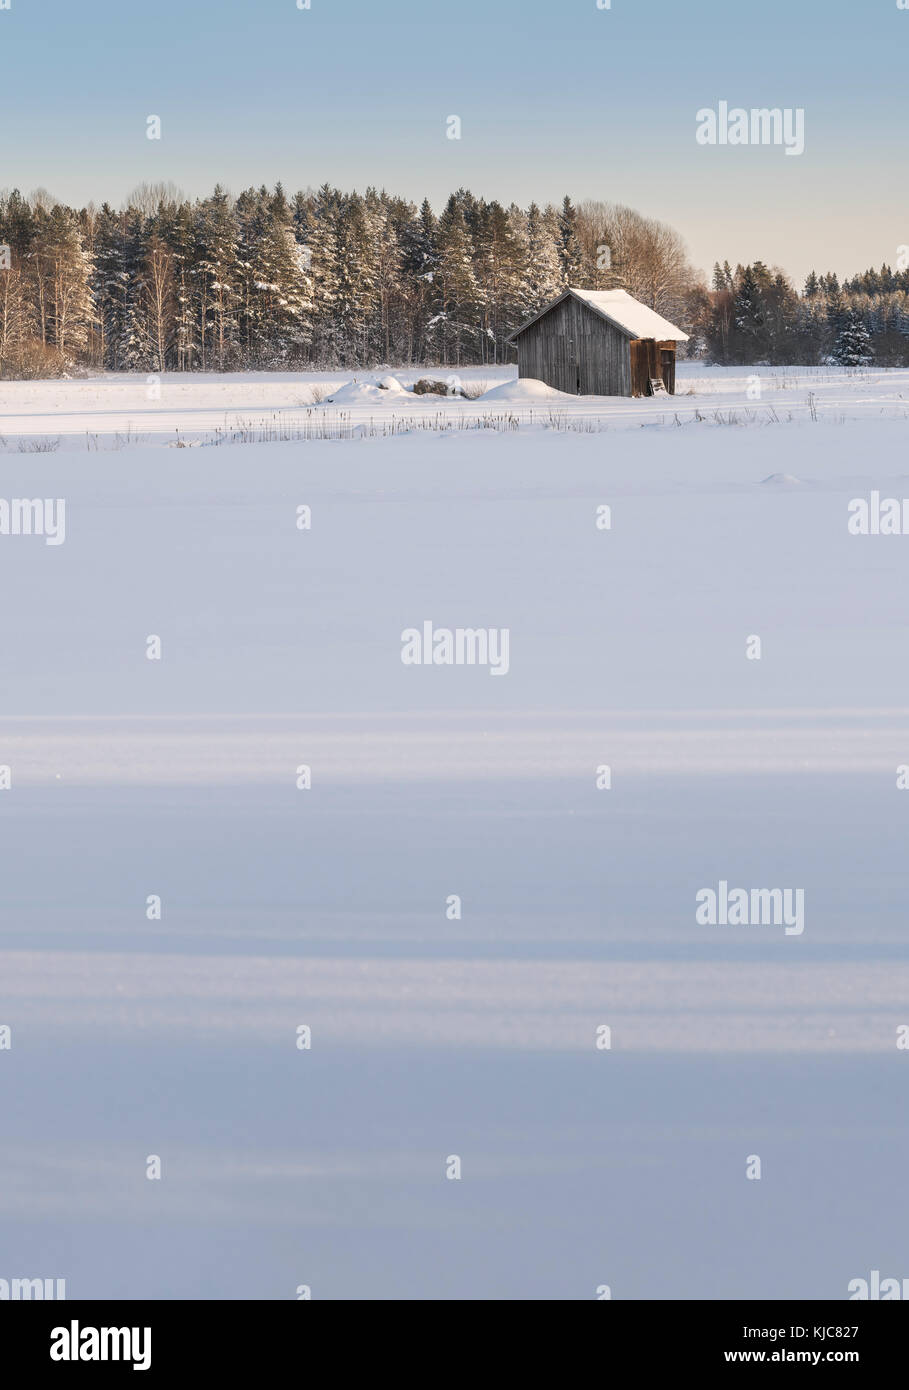 Vieille Grange en paysage de neige et forêt paysage d'hiver dans la région de Roslagen, Uppland, Suède, Scandinavie. Banque D'Images